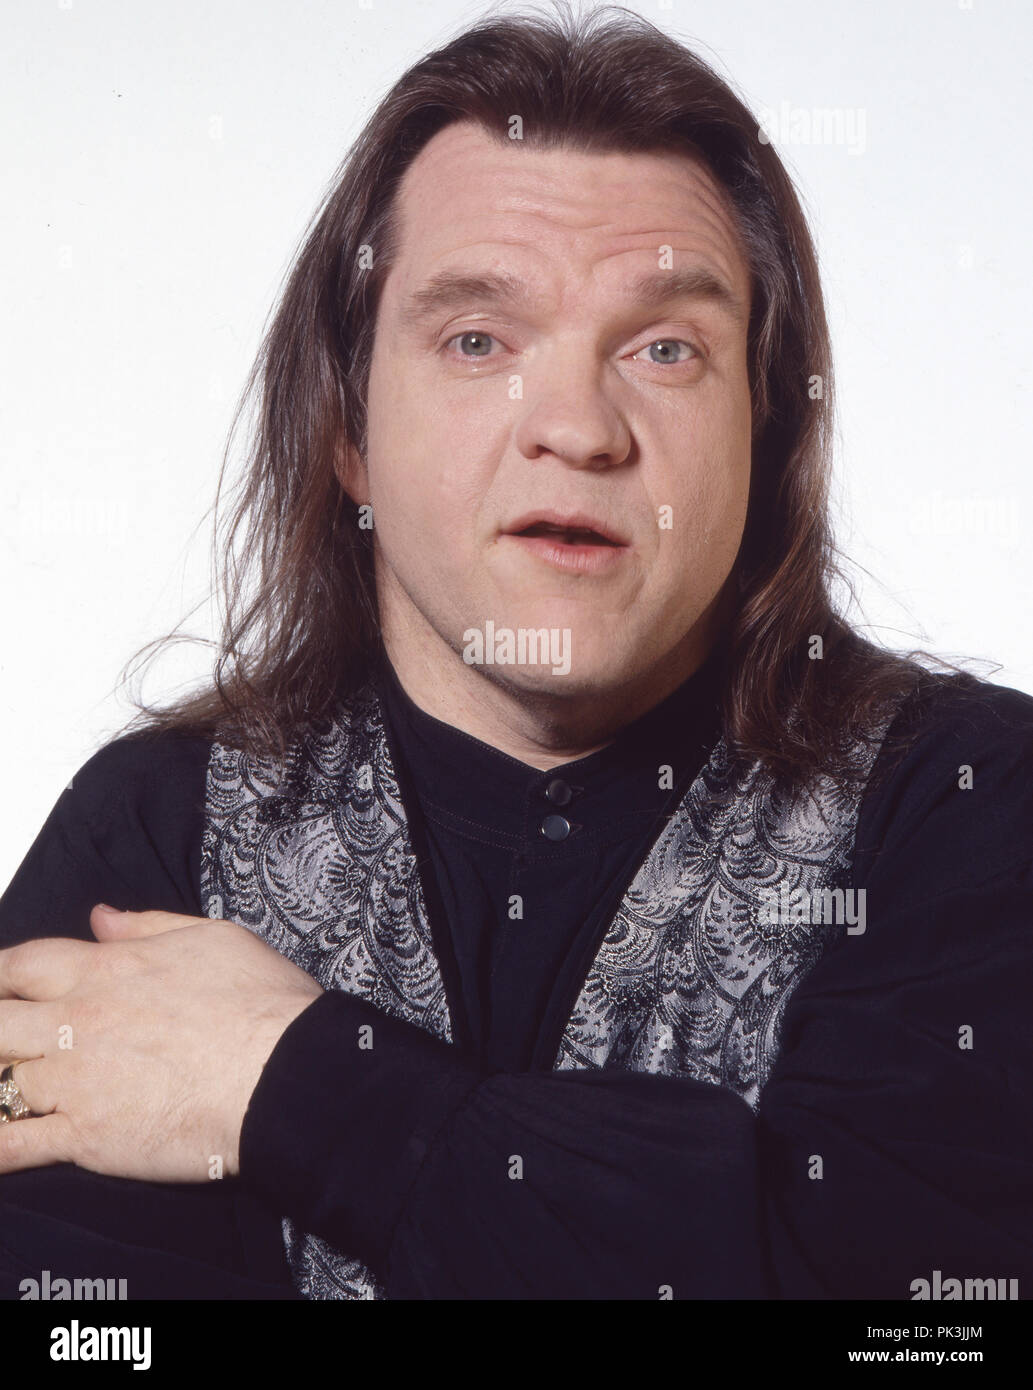 Meat Loaf, amerikanischer Rocksänger und Schauspiele, Deutschland 2001. American rock Sänger und Schauspieler Meat Loaf, Deutschland 2001. | Verwendung weltweit Stockfoto